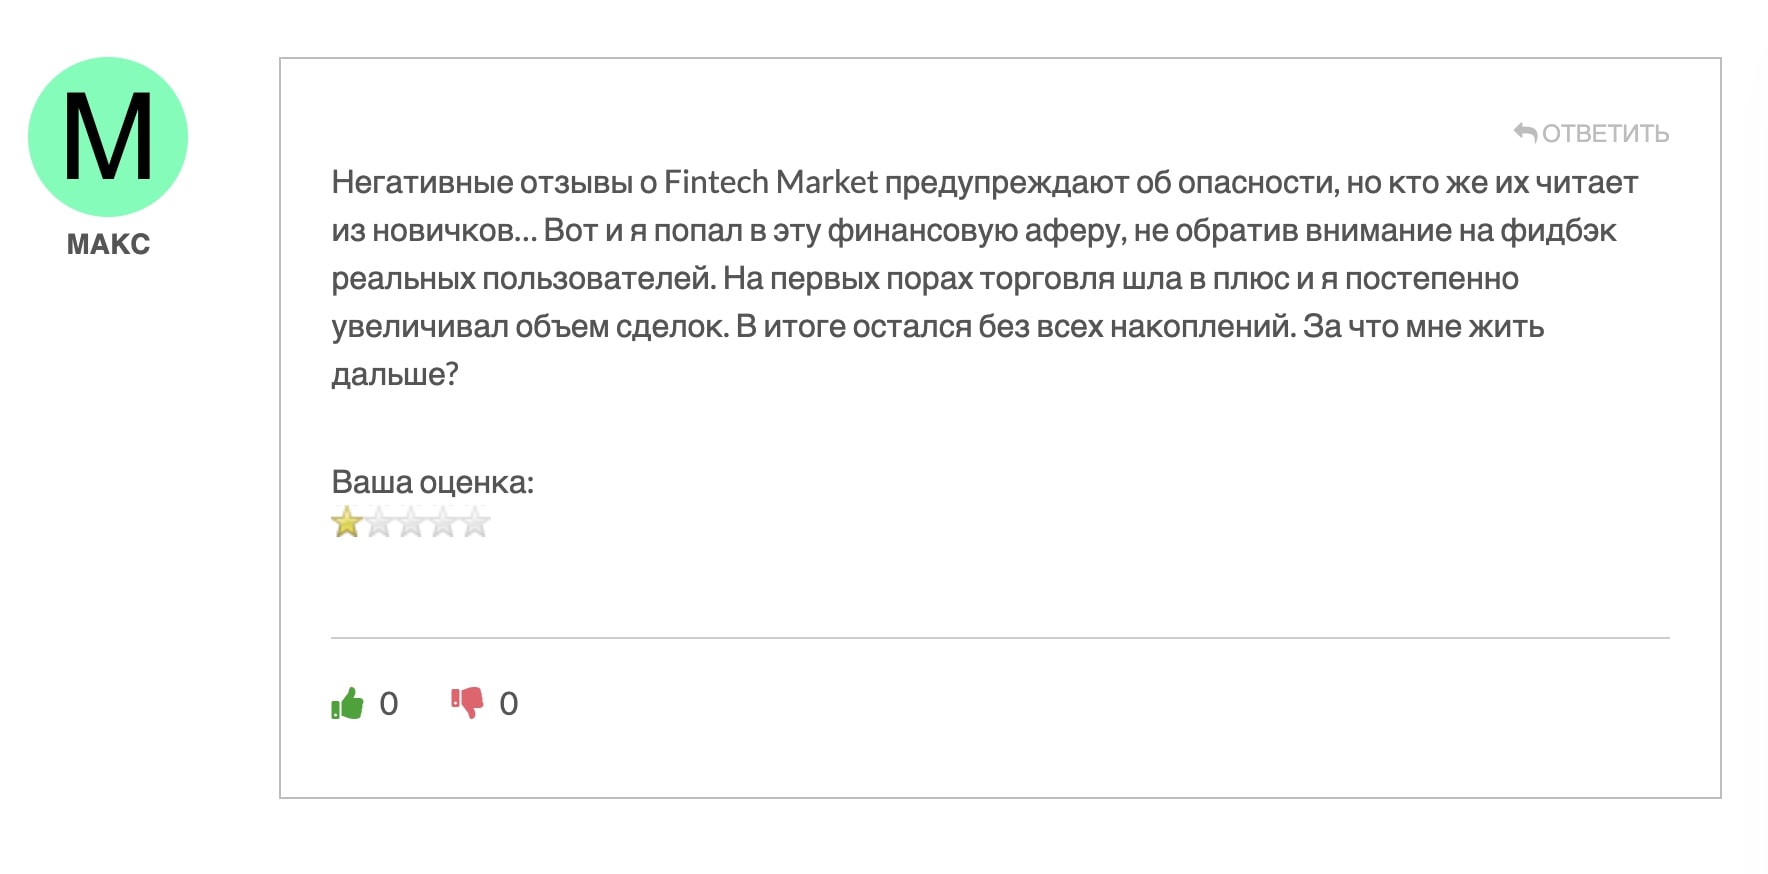 FintechMarket — лжеброкер, который точно не поможет заработать